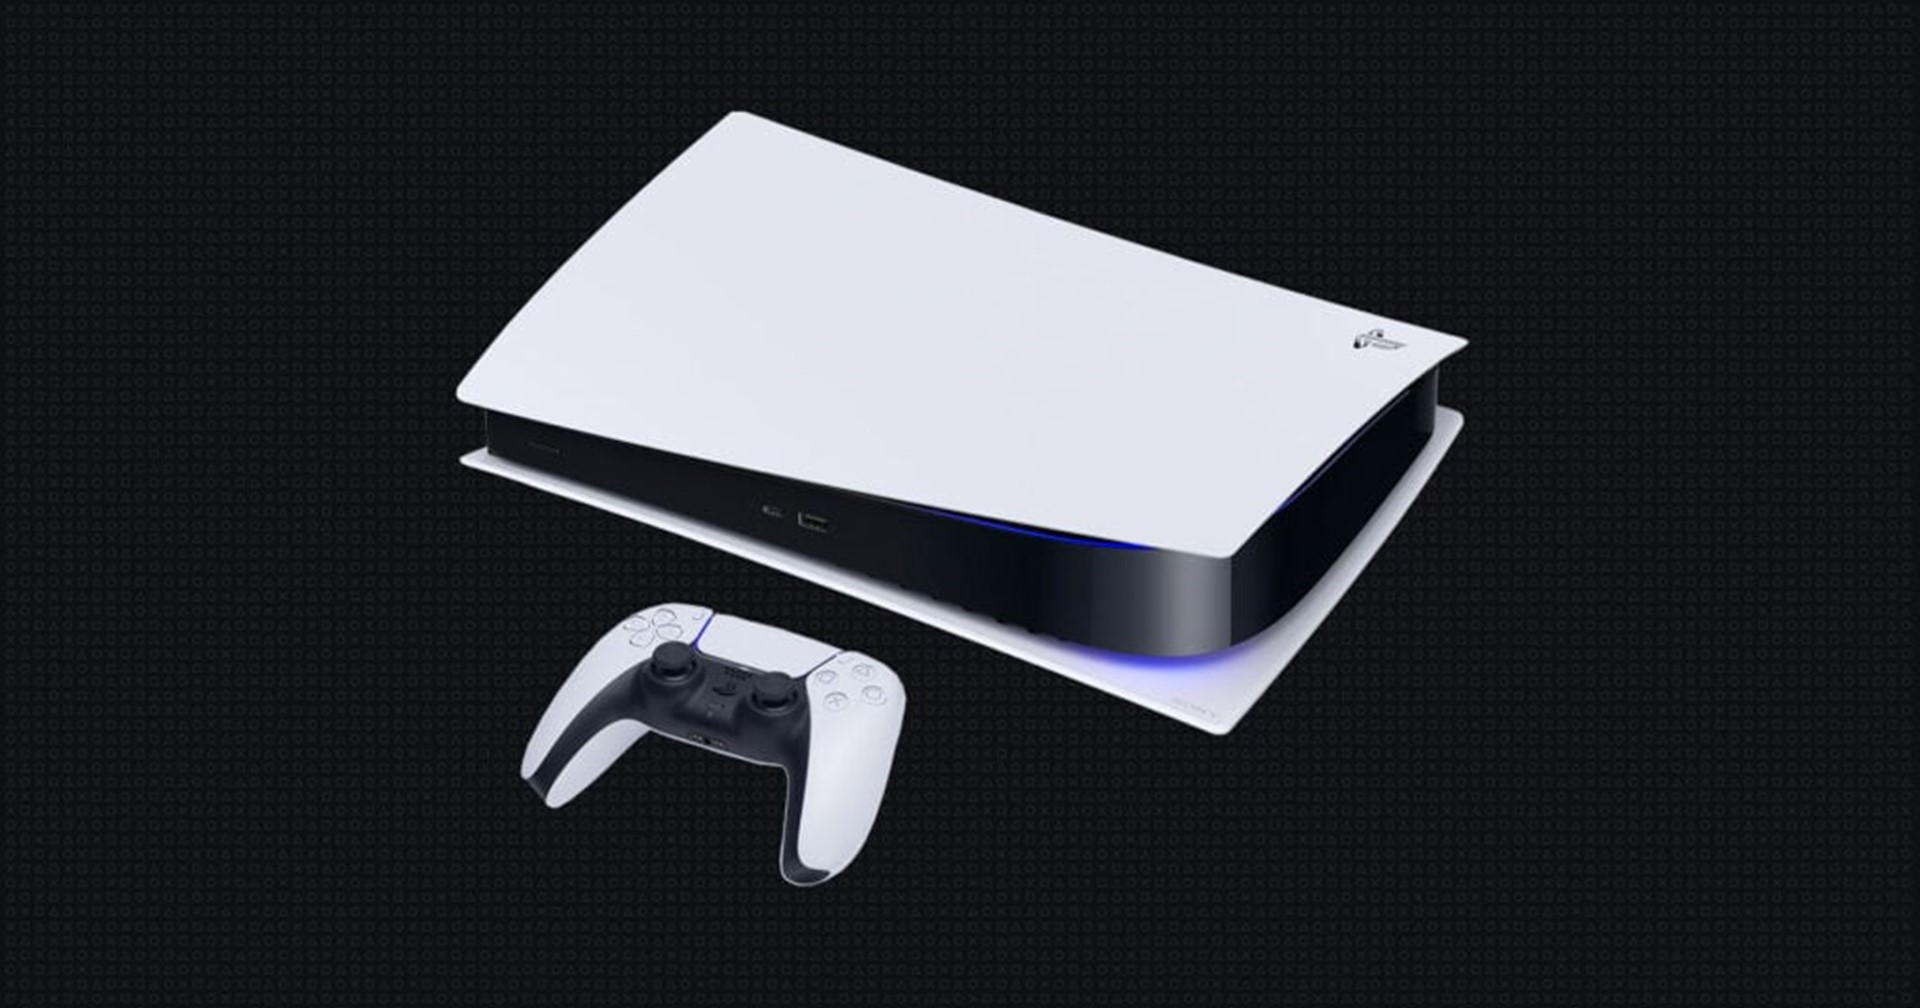 Sony บอกเครื่อง PlayStation 5 เข้าสู่ ‘ช่วงครึ่งหลังของวงจรชีวิตผลิตภัณฑ์’ แล้ว